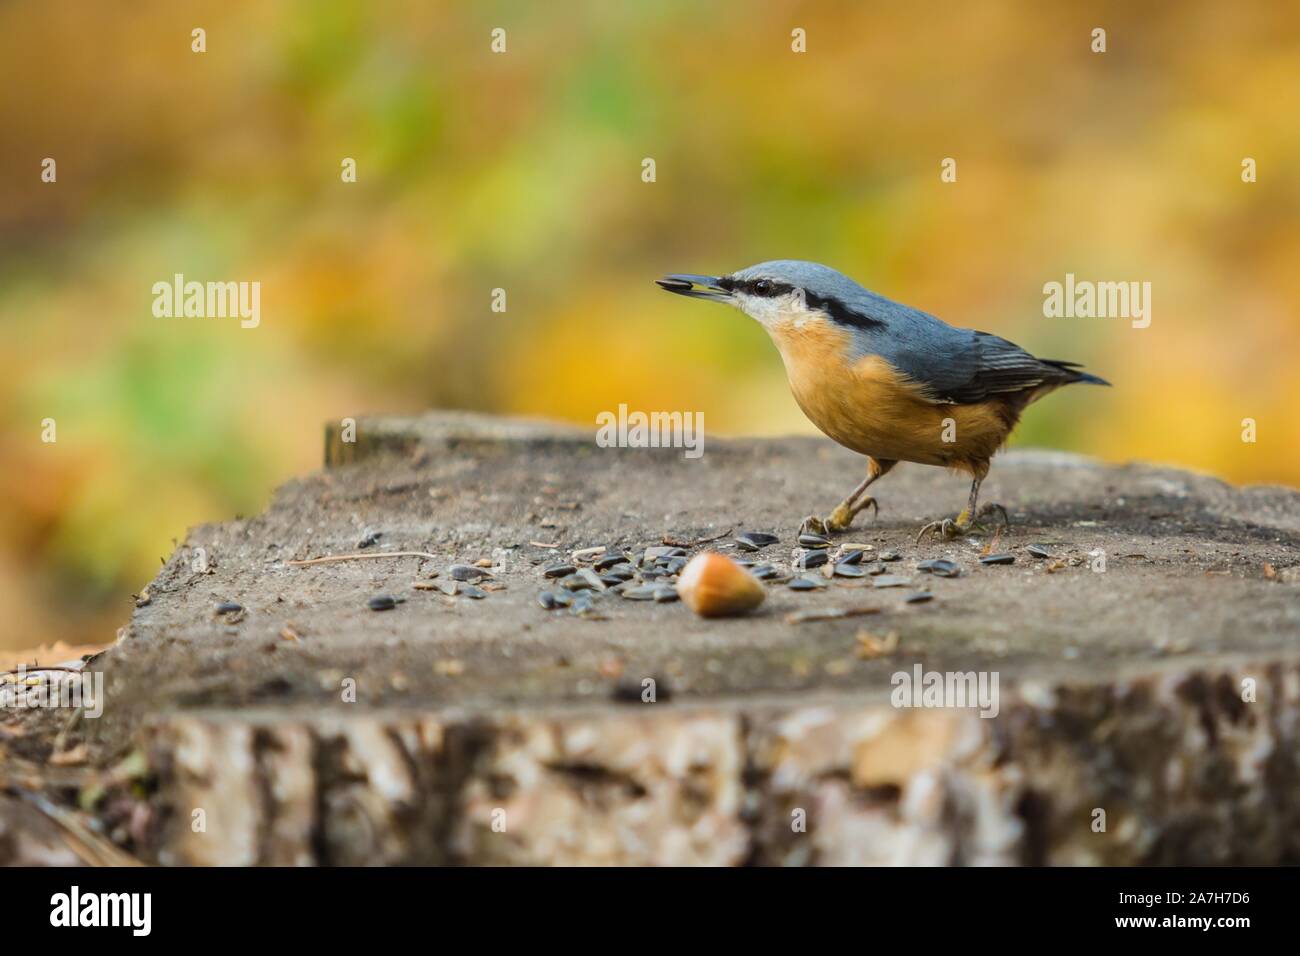 Eurasian picchio muratore, un piccolo blu-grigio e arancione uccello colorato con una striscia nera sopra occhio, seduto su un ceppo di albero e becchettare in corrispondenza di semi di girasole. Foto Stock